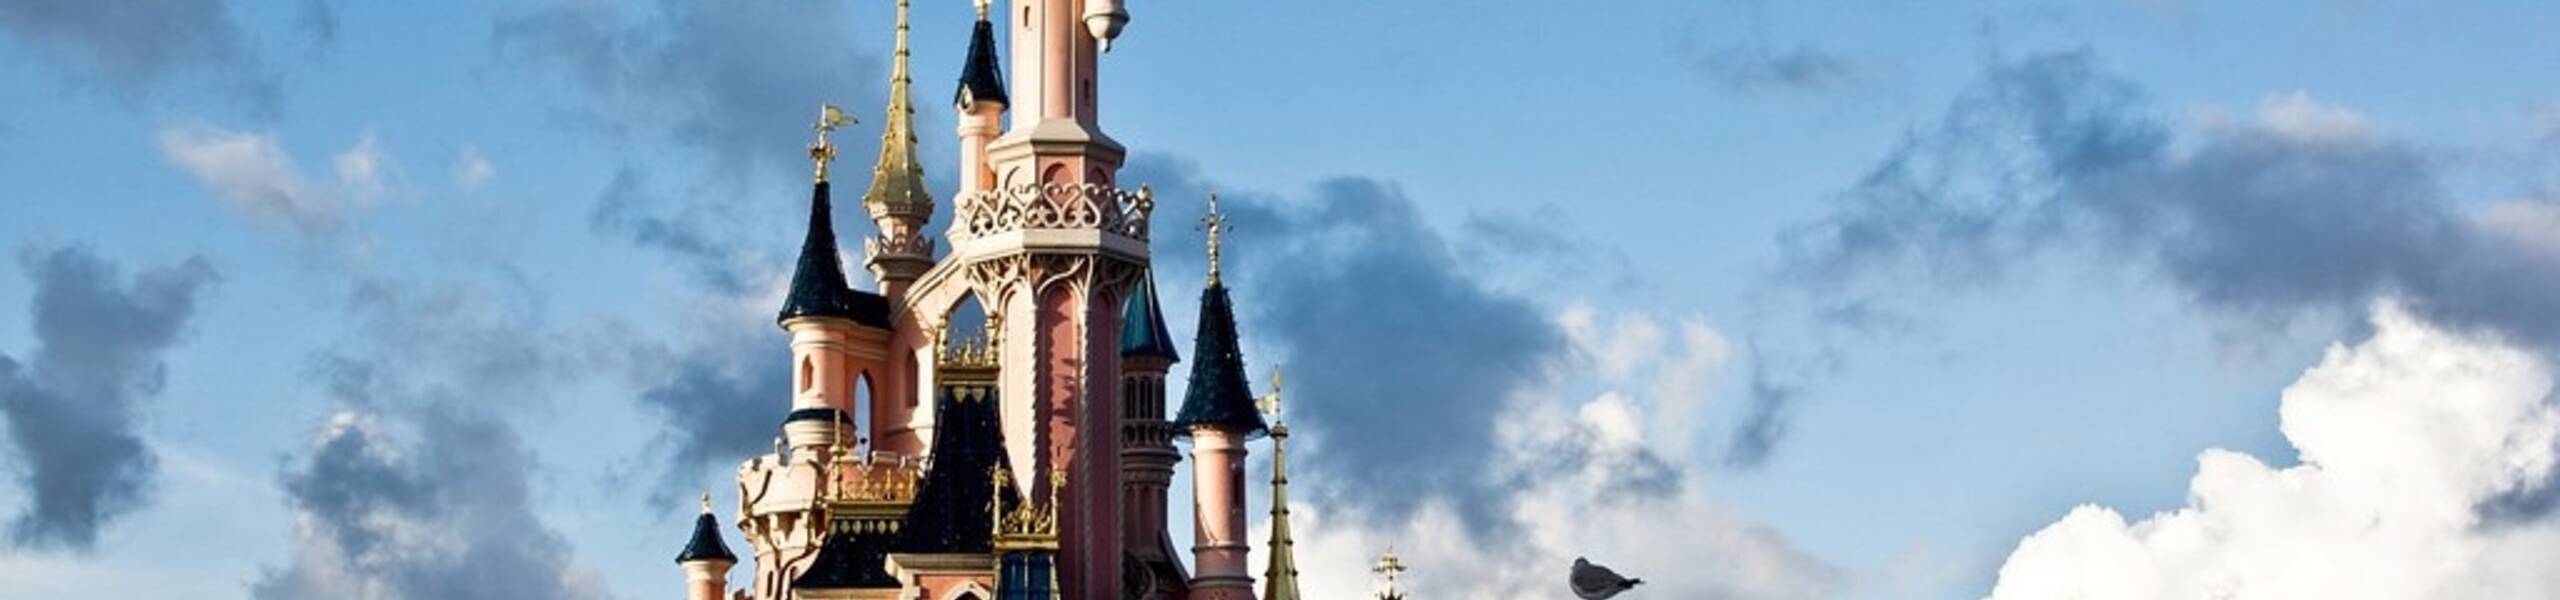 Disney: Publica los resultados de su tercer trimestre fiscal el 12 de Agosto